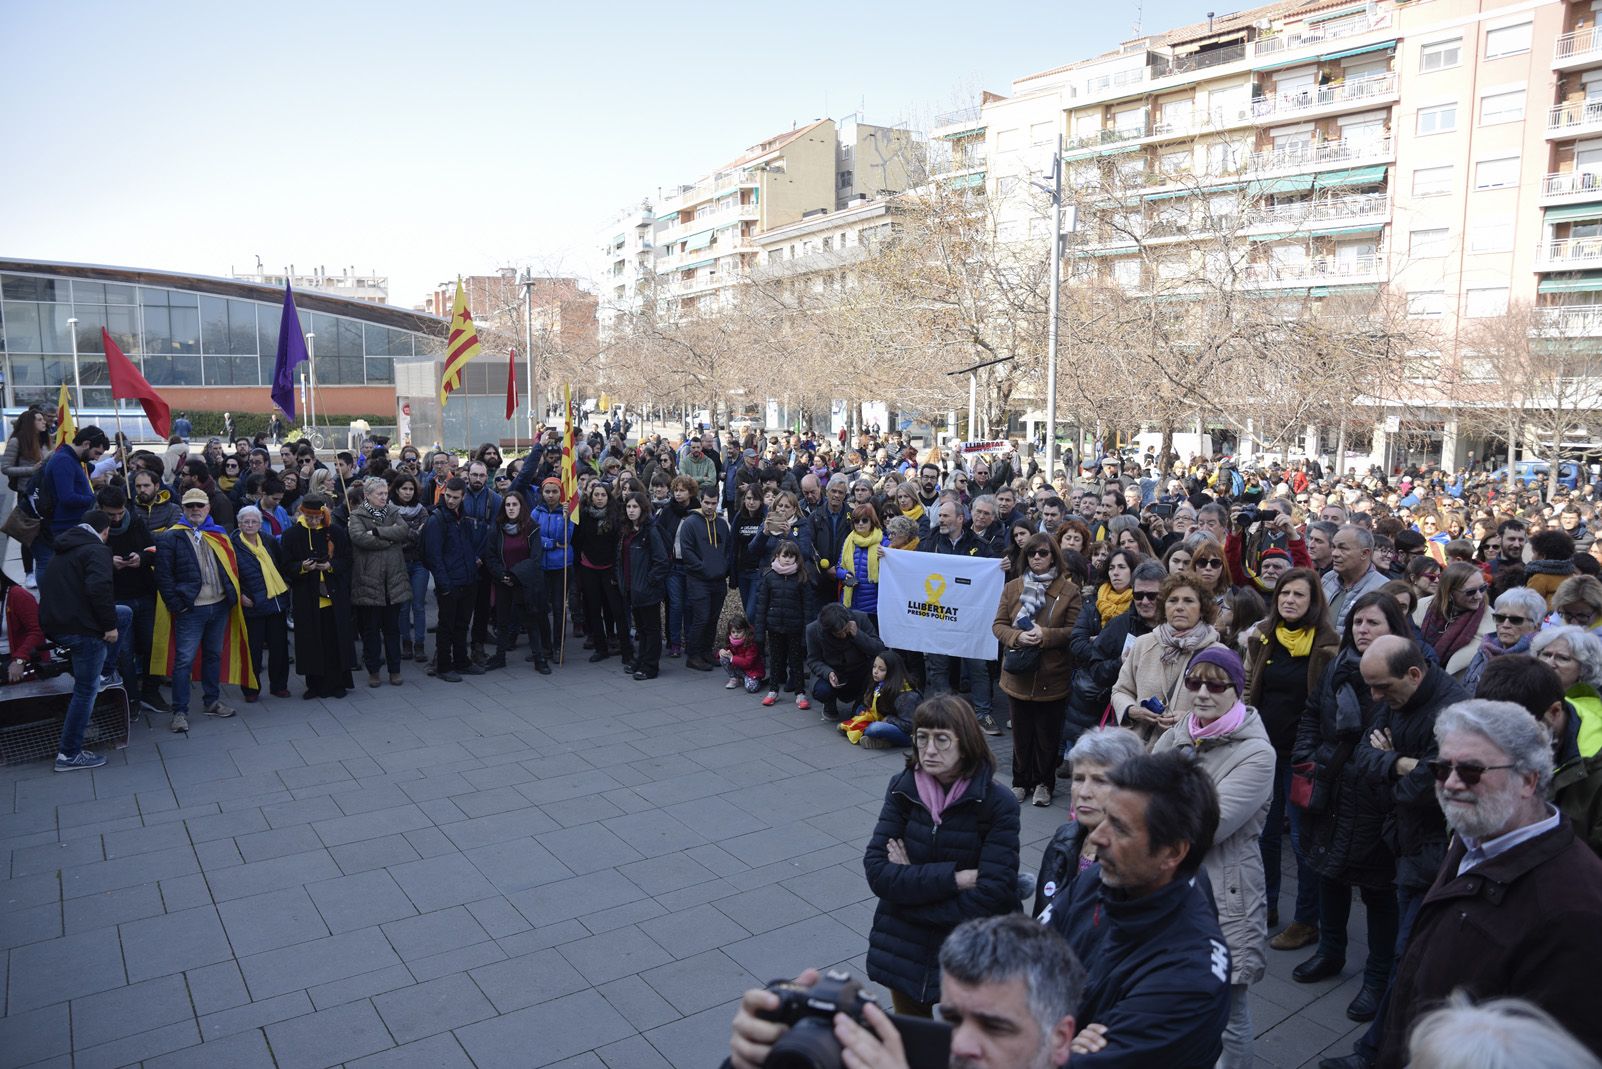 Manifestació vaga general del 21 de Febrer a Sant Cugat. Foto: Bernat Millet.